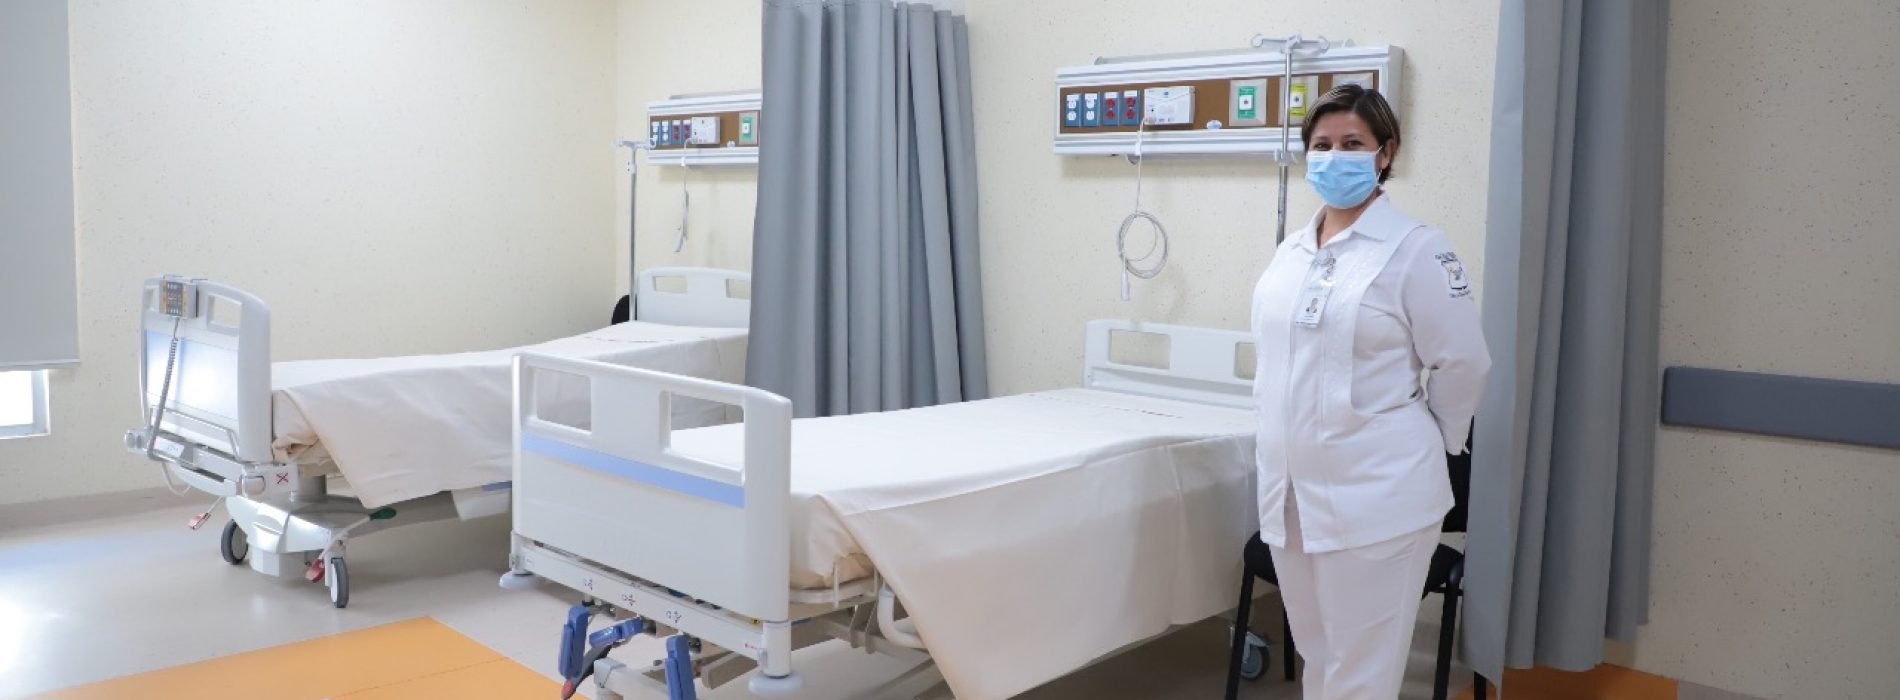 Oaxaca cuenta con disponibilidad de camas para la atención de pacientes COVID